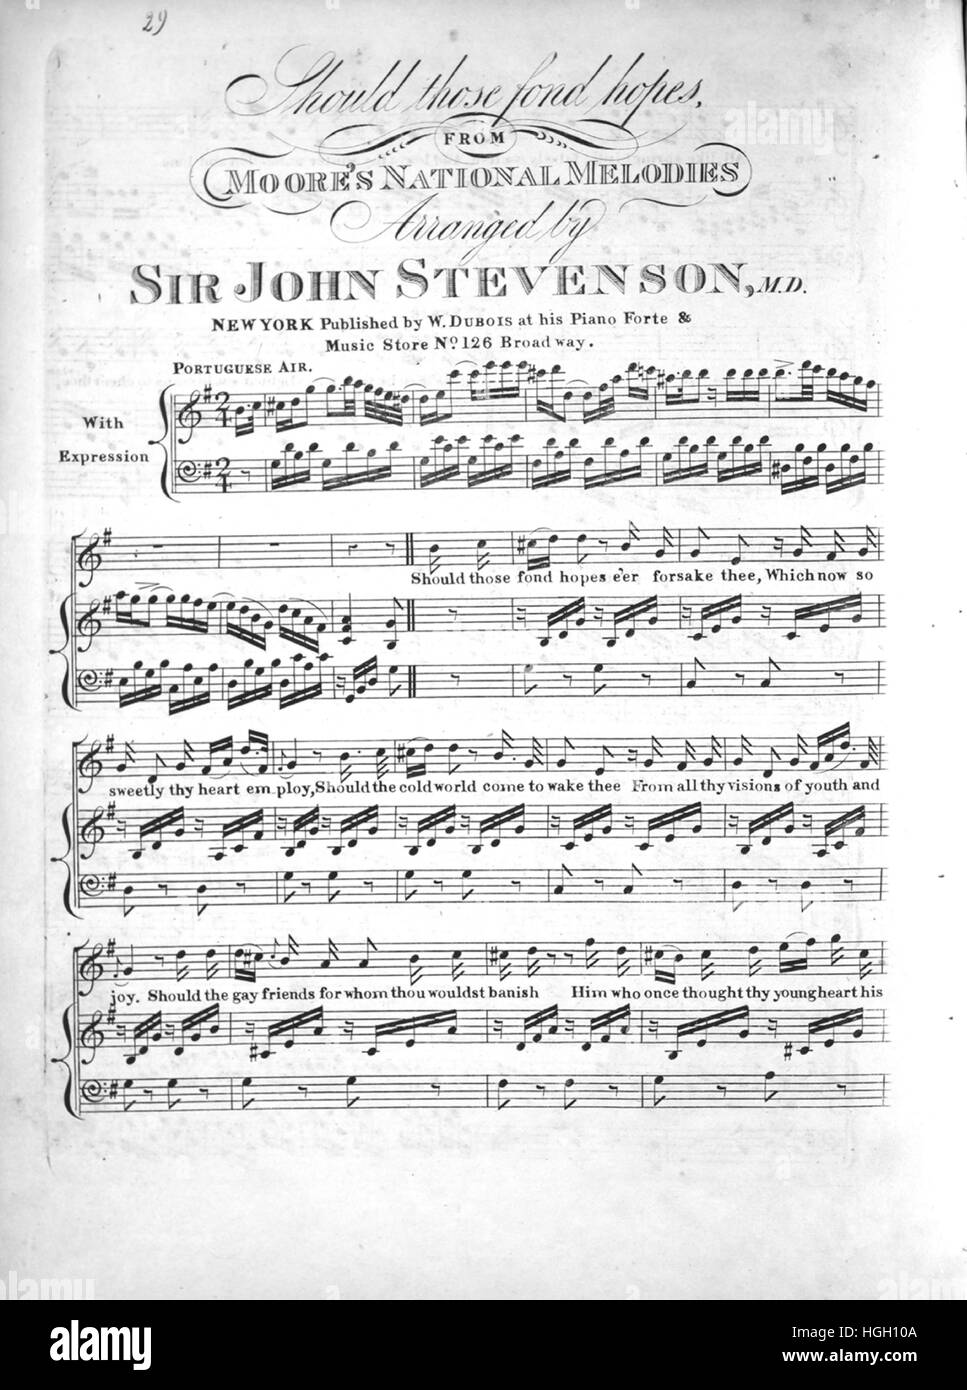 Imagen de cubierta de partituras de la canción 'debería aquellos que aman  las esperanzas, de Melodías nacionales de Moore", con notas de autoría  original leyendo 'organizado por Sir John Stevenson, MD, Estados